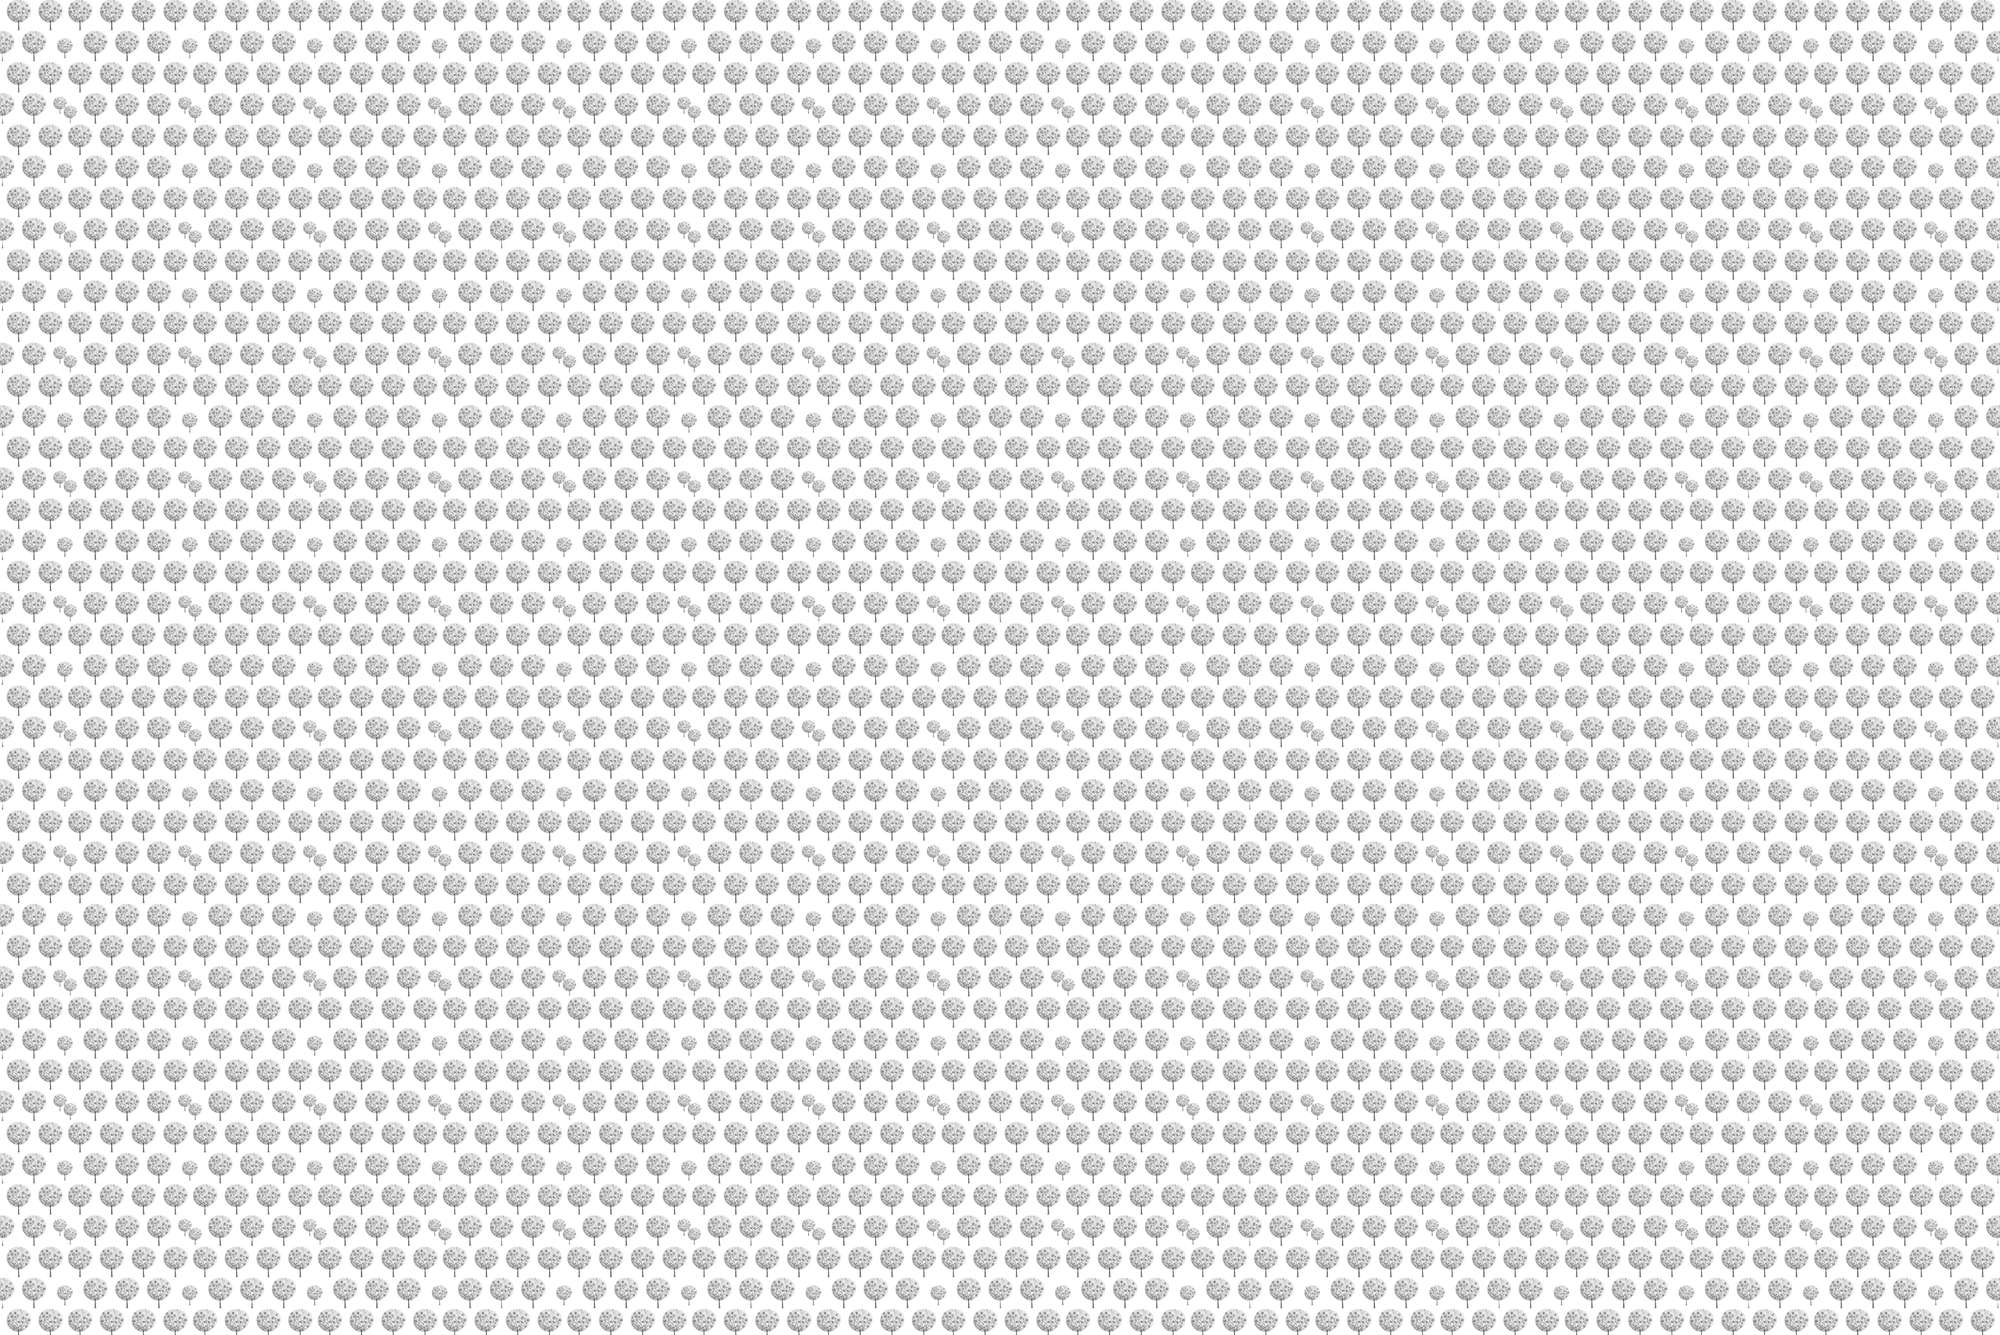             Design Fototapete Wald Muster in Grau auf weißem Hintergrund auf Strukturvlies
        